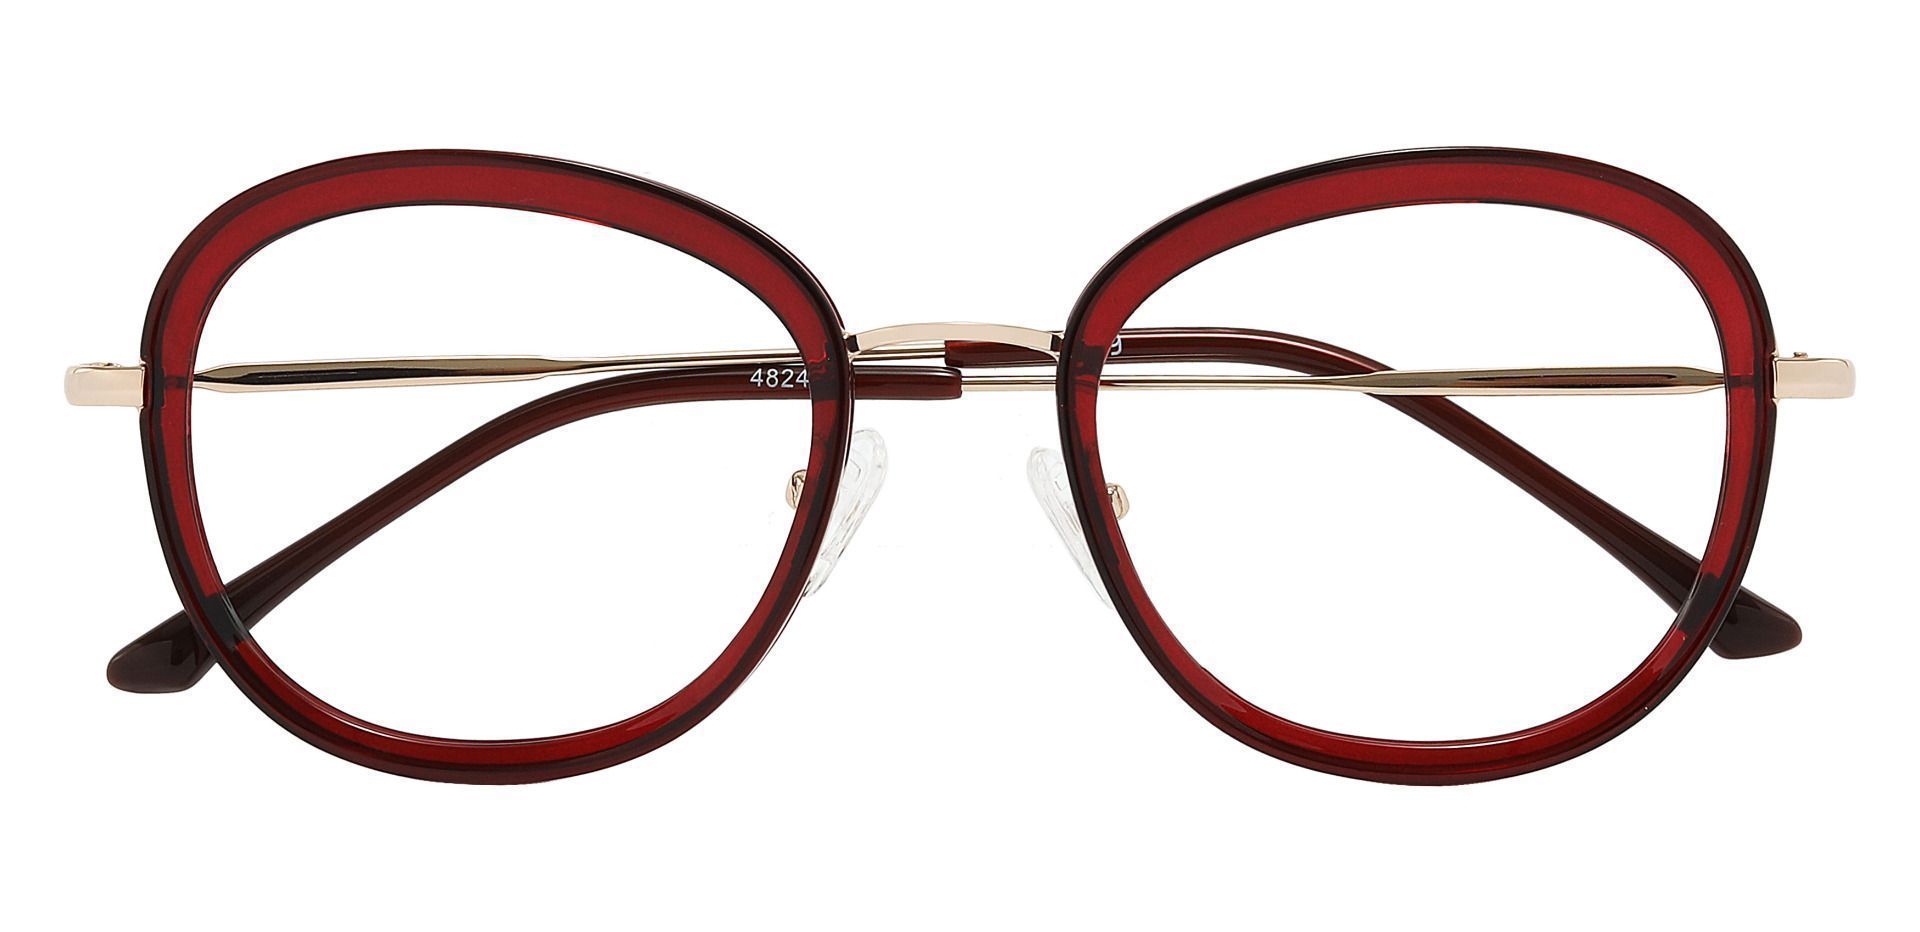 Bourbon Oval Prescription Glasses - Red